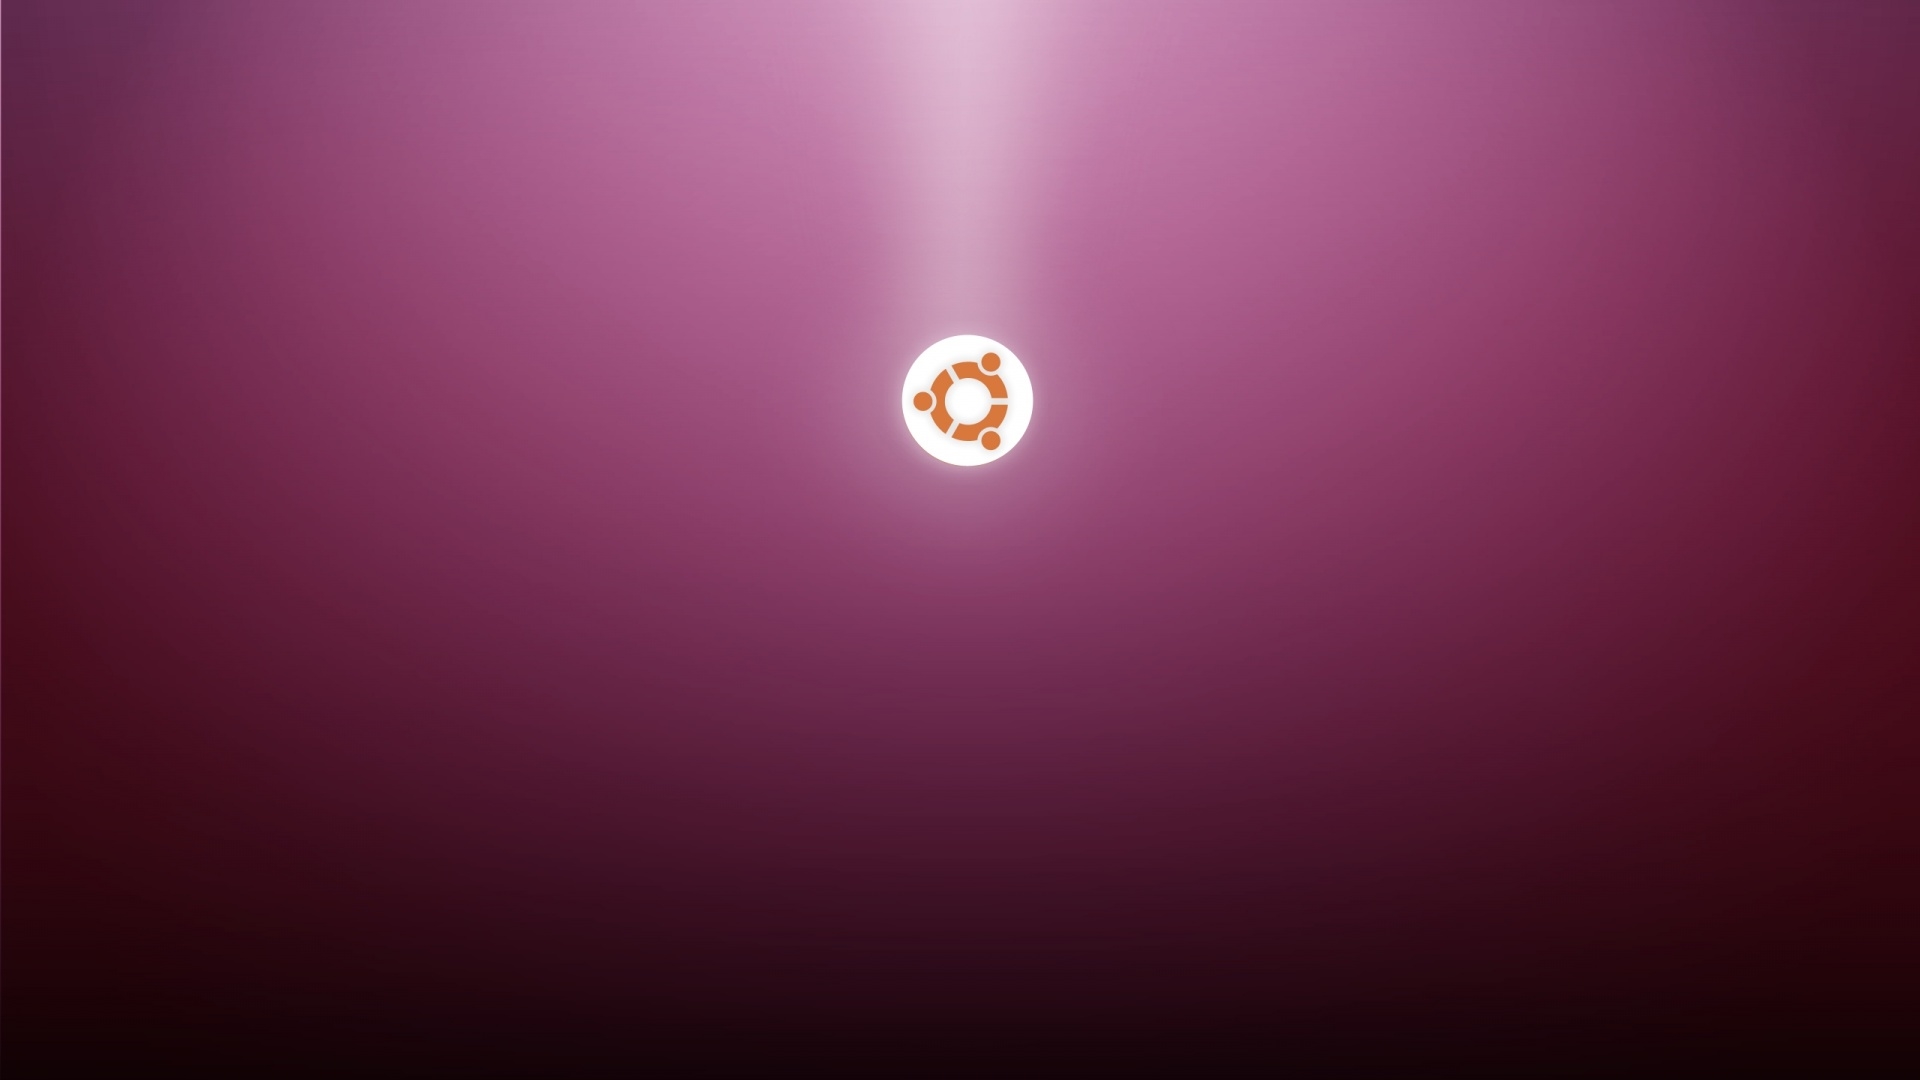 Ubuntu Wallpaper Download Full